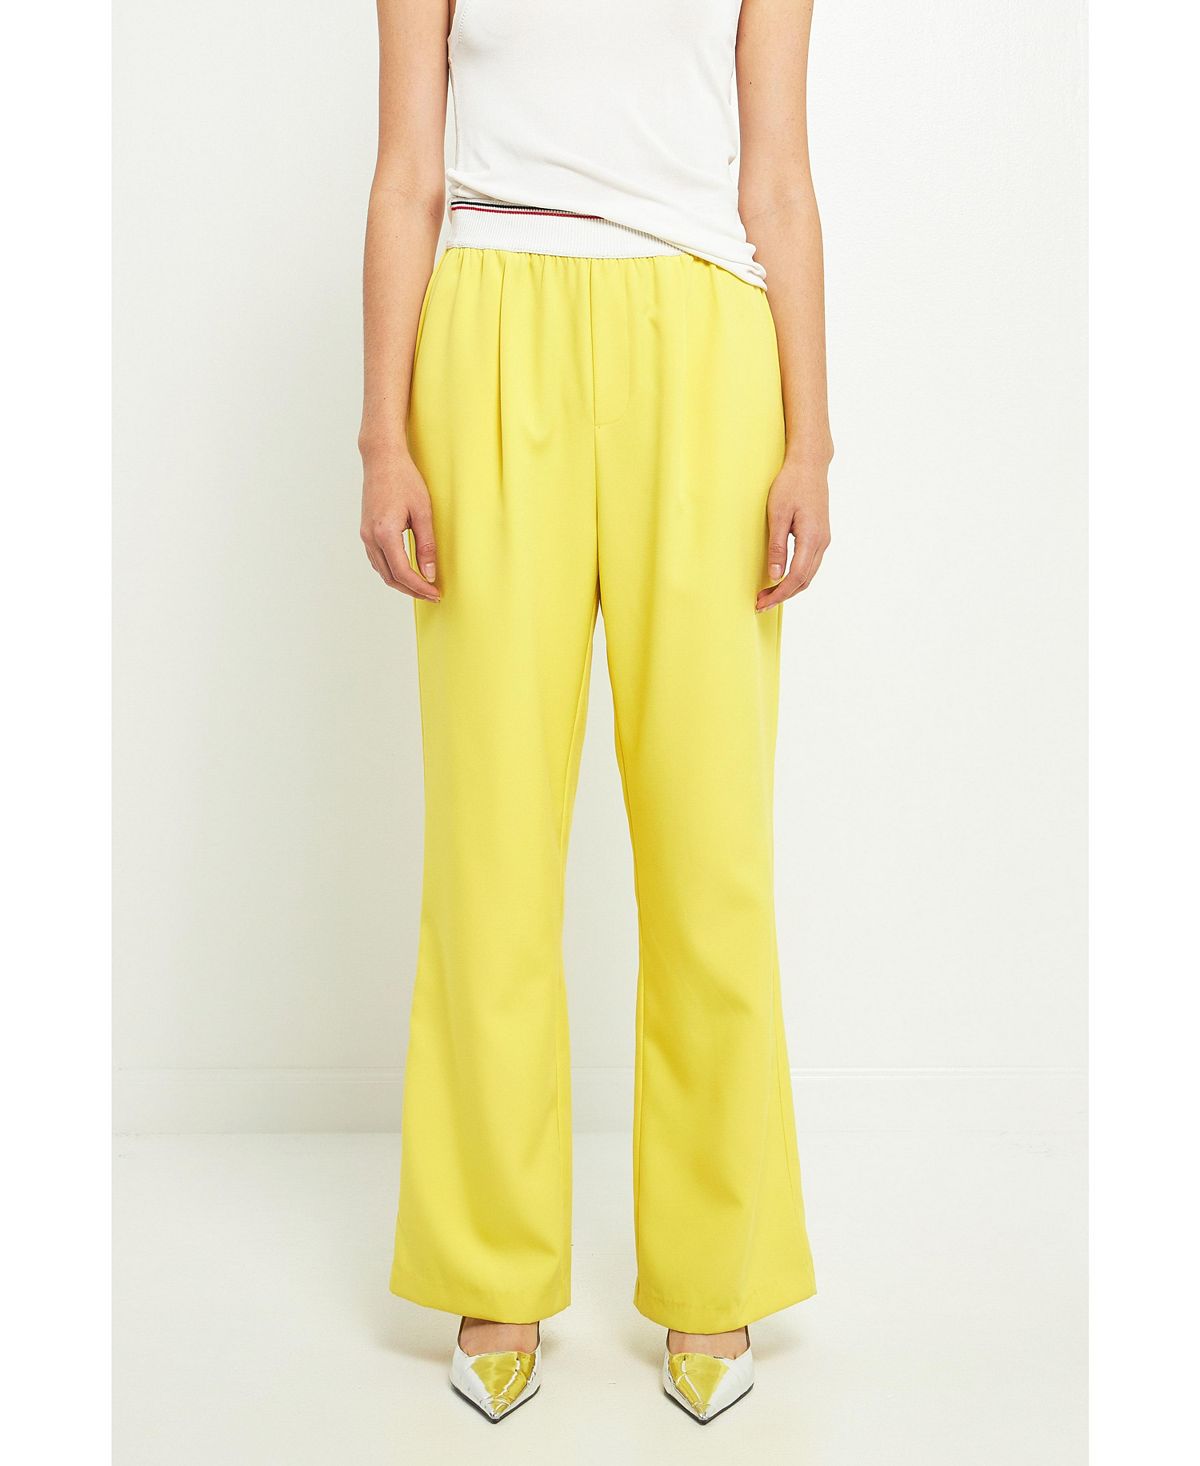 Женские широкие брюки с эластичной отделкой Grey Lab, желтый